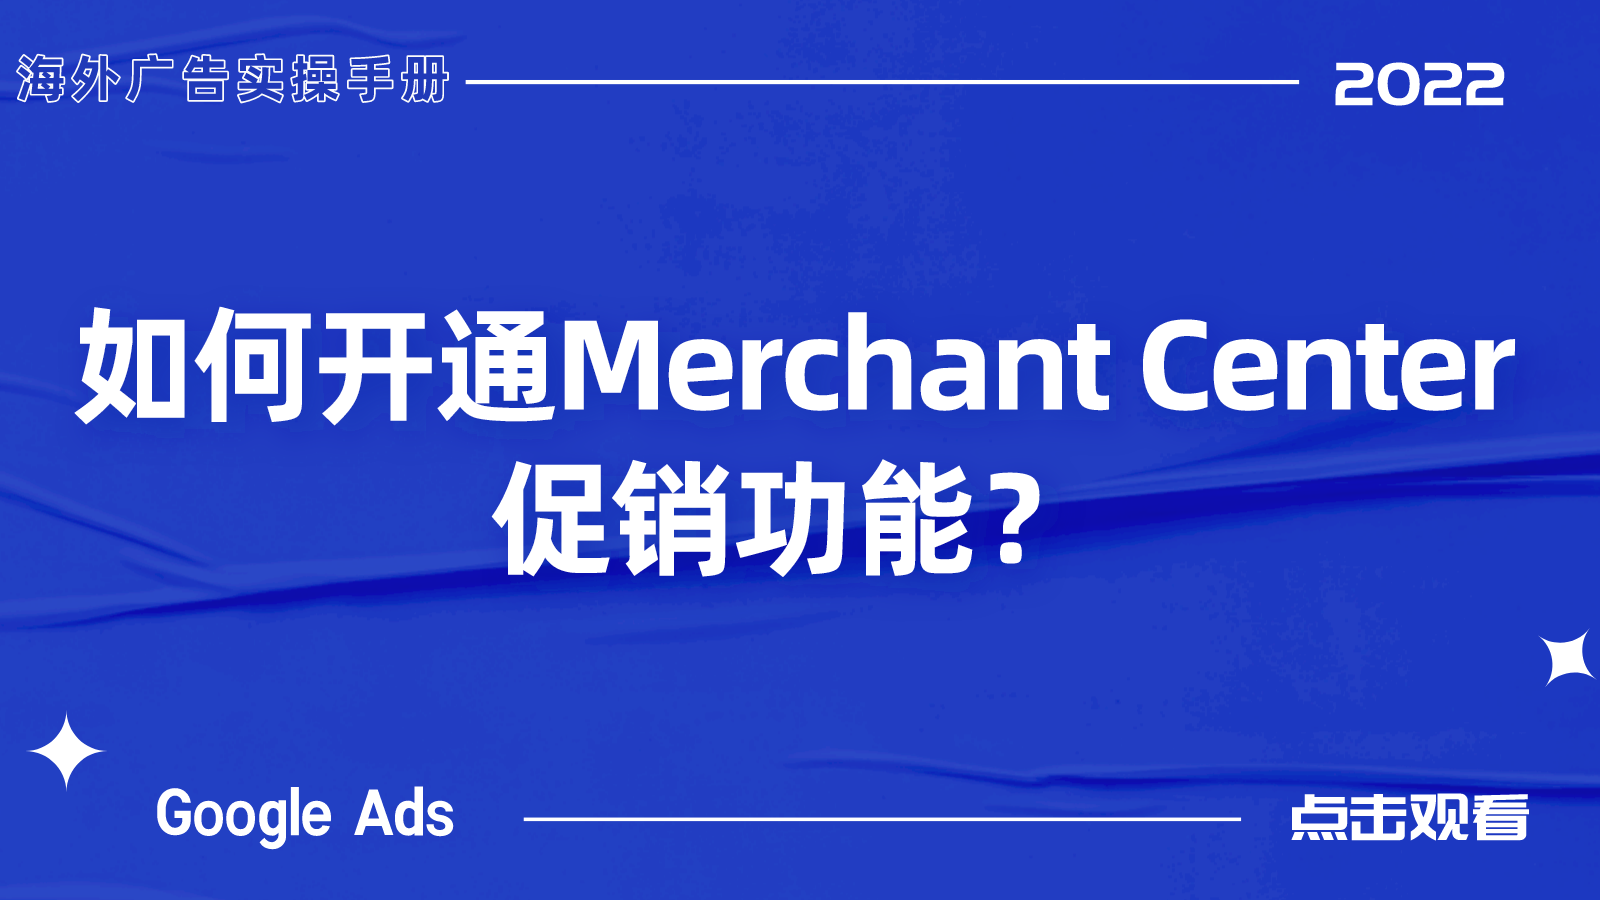 【Google Ads】如何开通Google Merchant Center促销功能